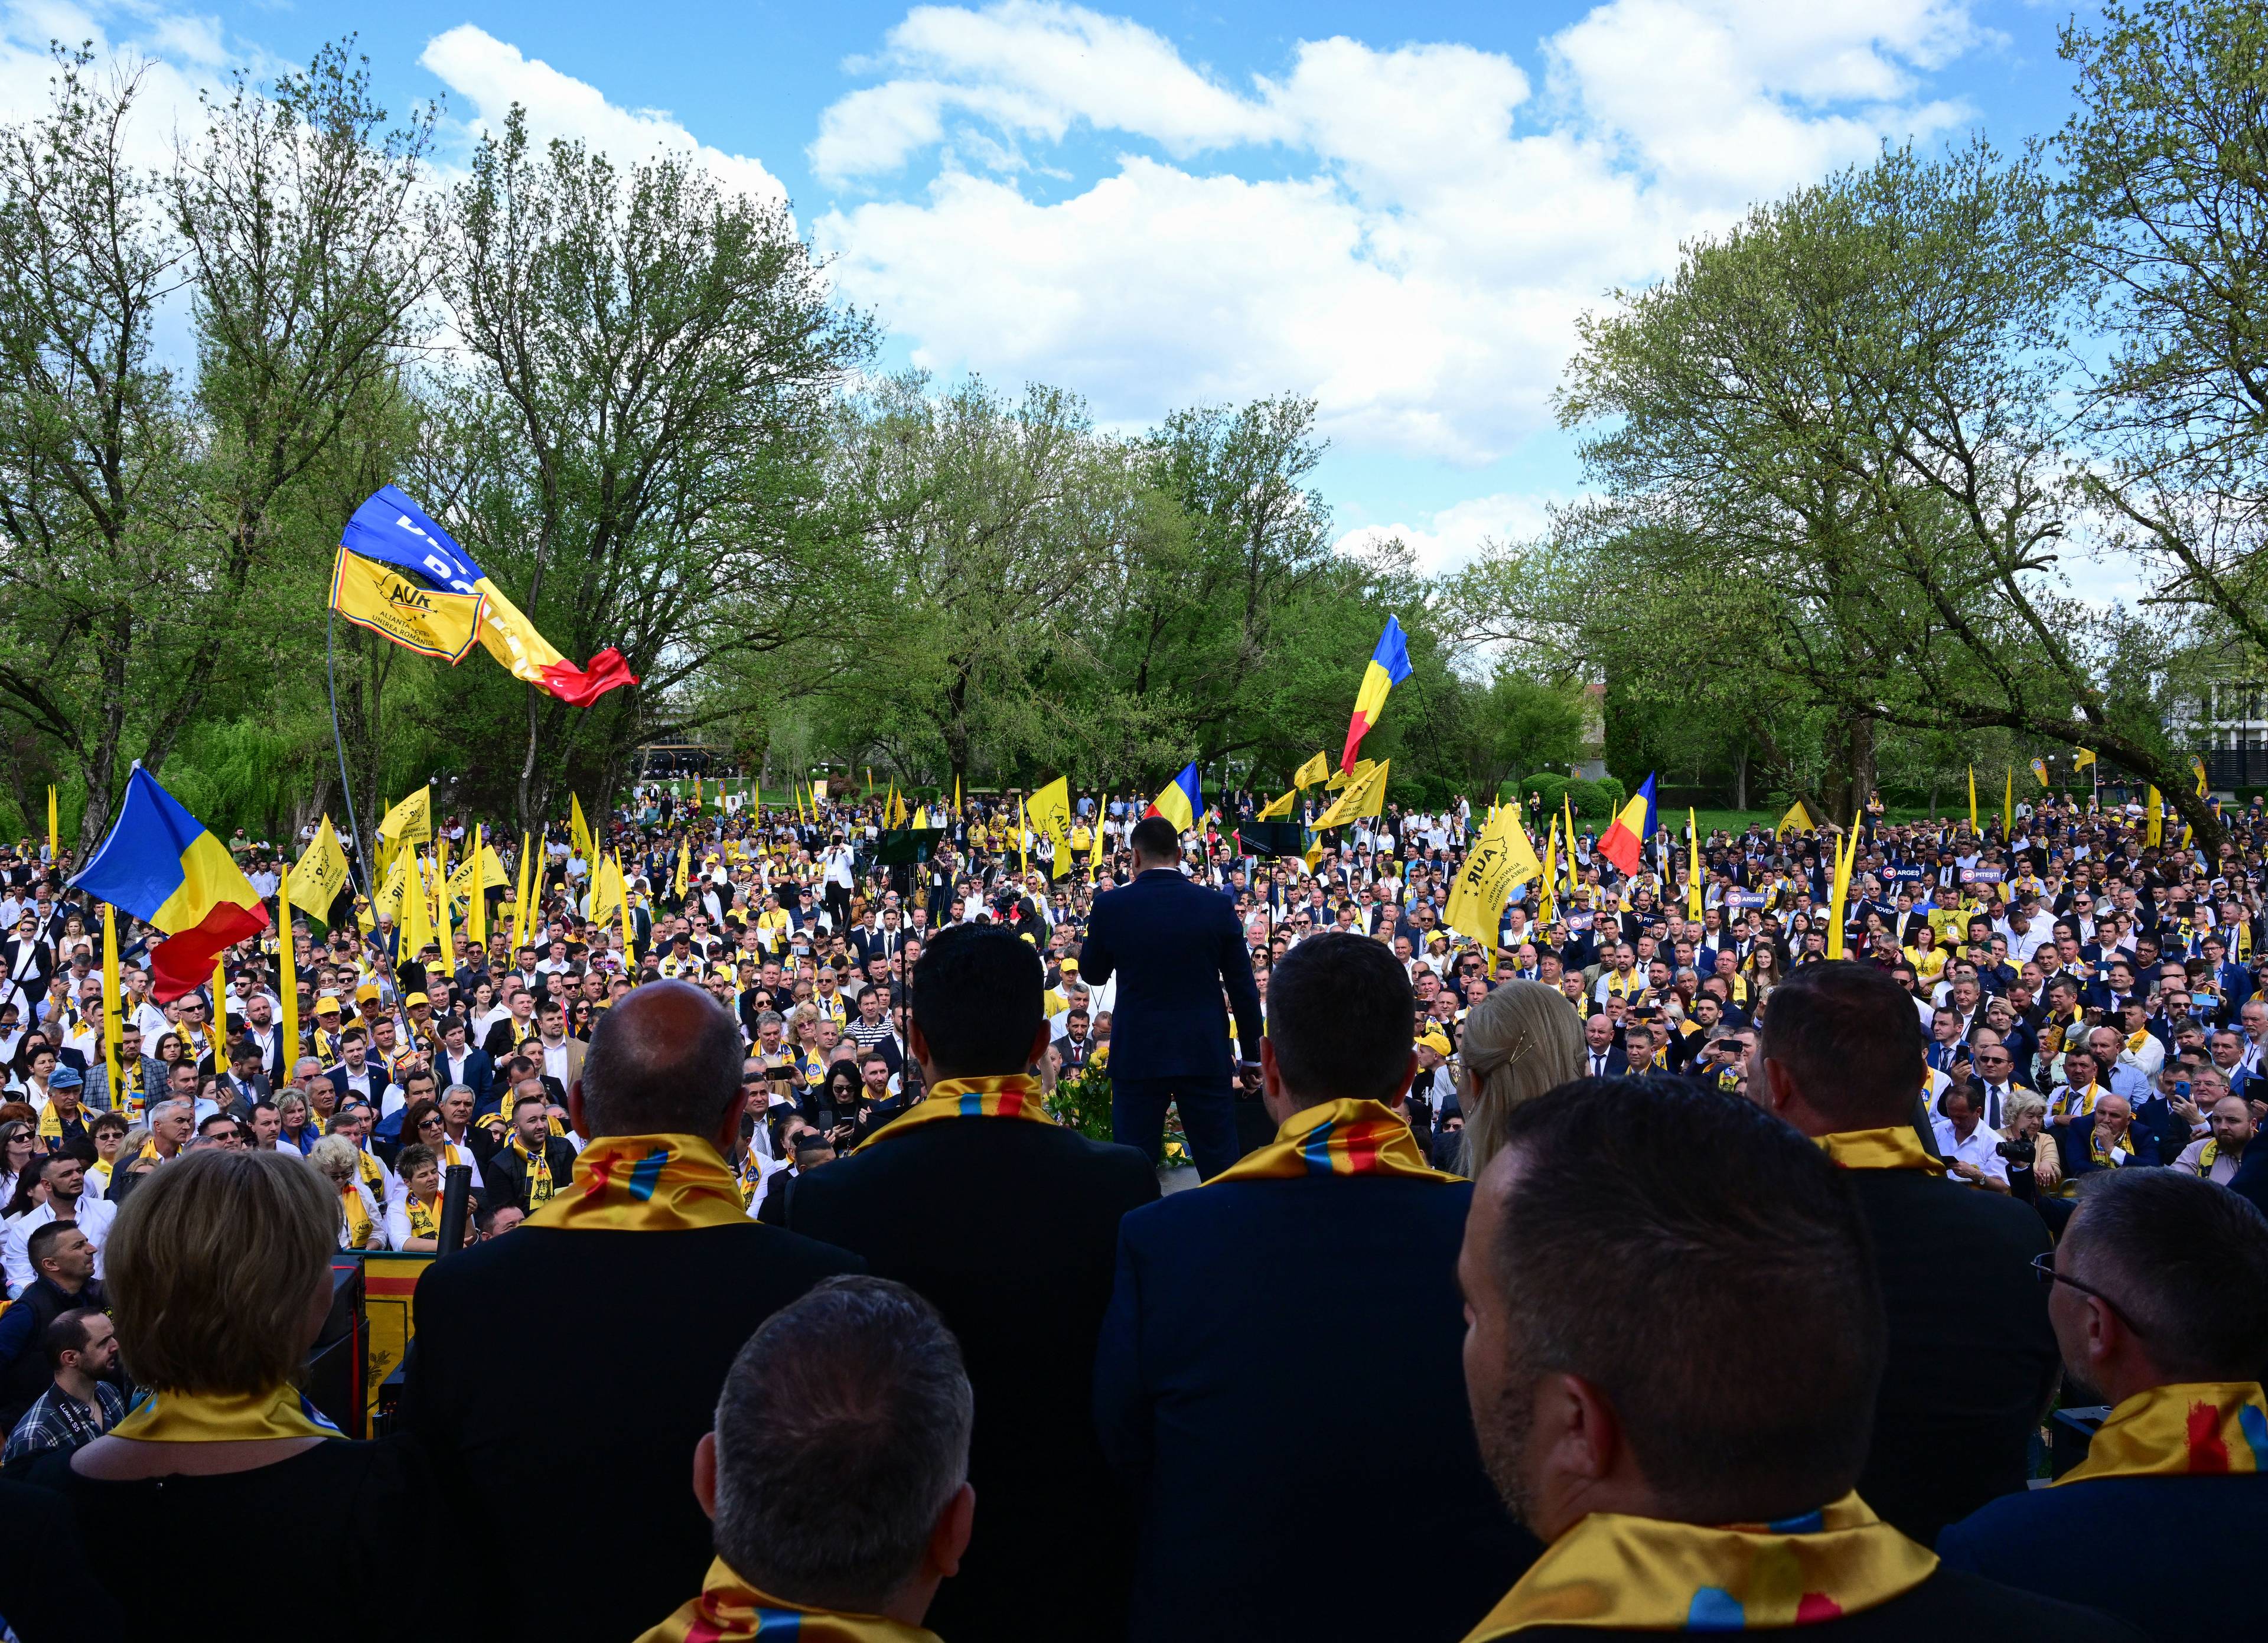 Wiec polityczny przed wyborami w Rumuni, lider stoi tyłem do obiektywu, przed nim tłum z rumuńskimi flagami